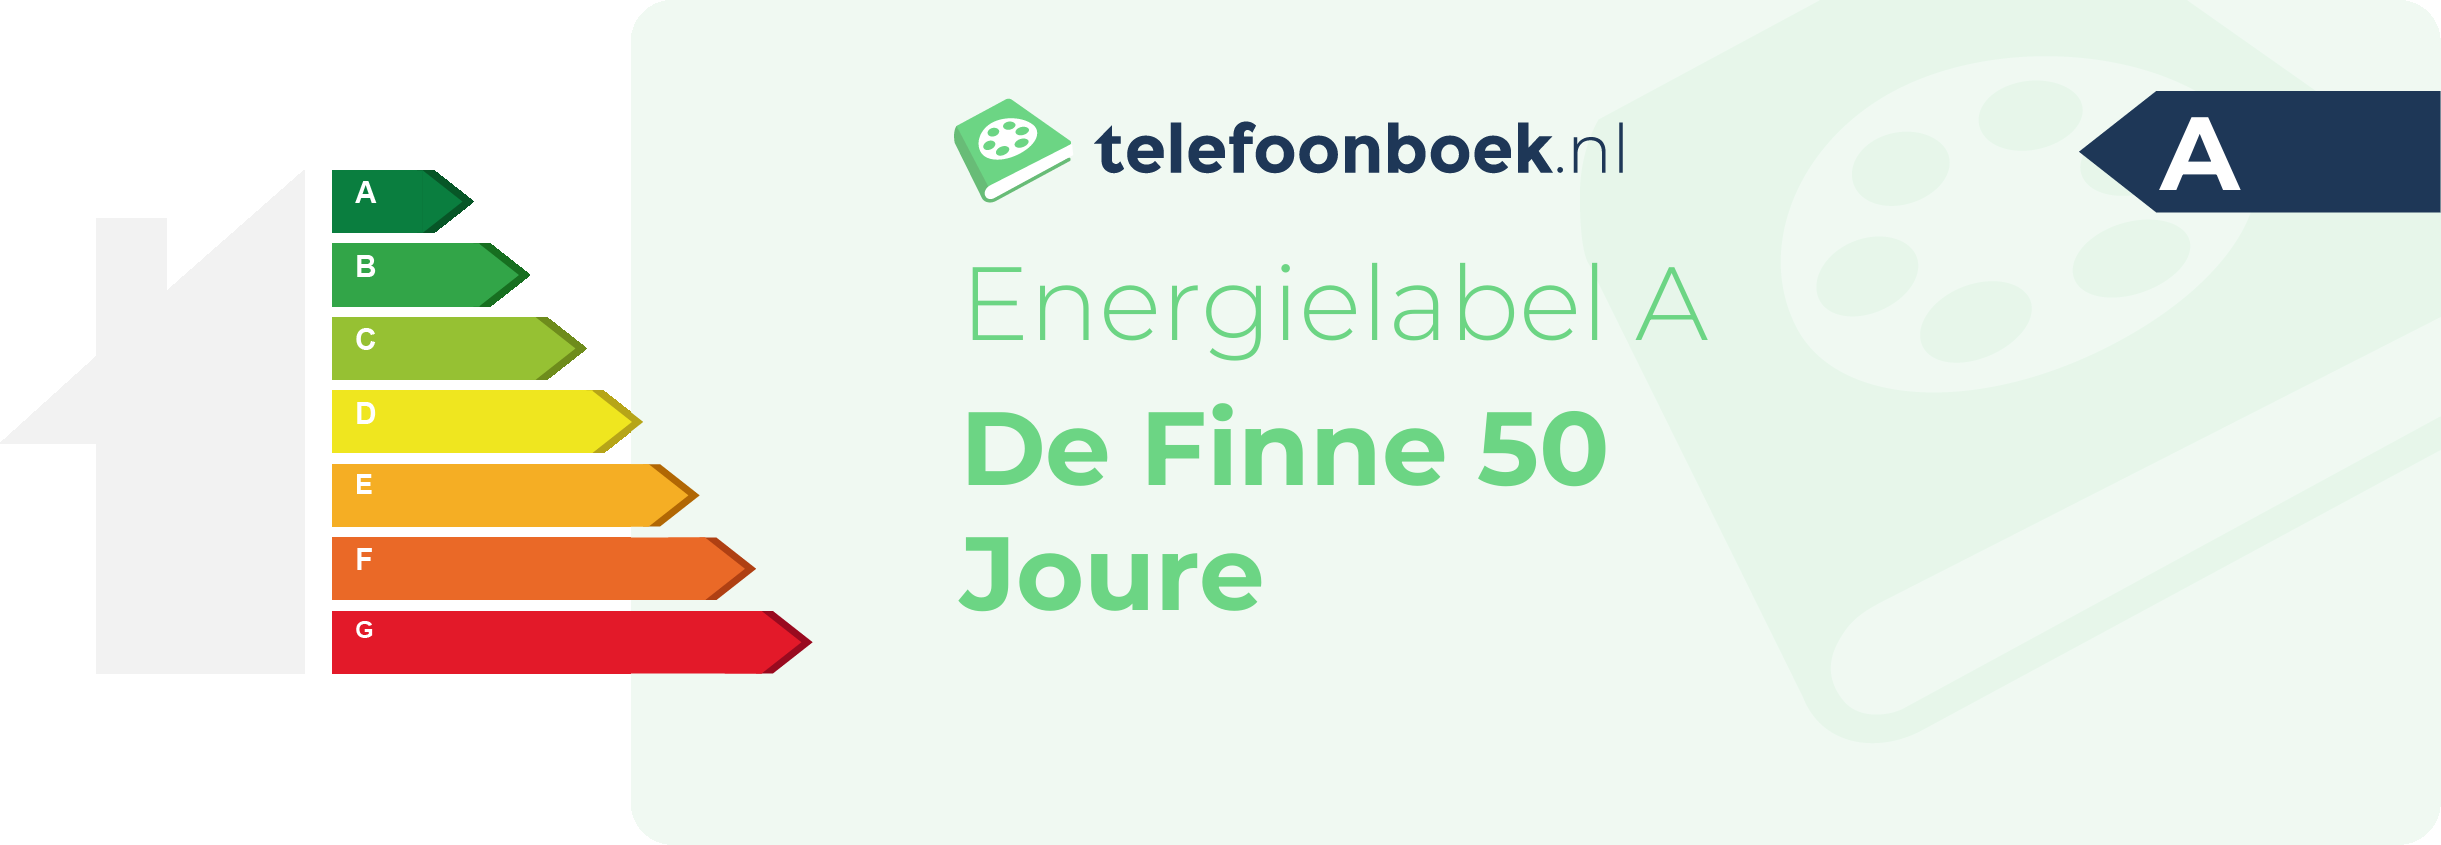 Energielabel De Finne 50 Joure